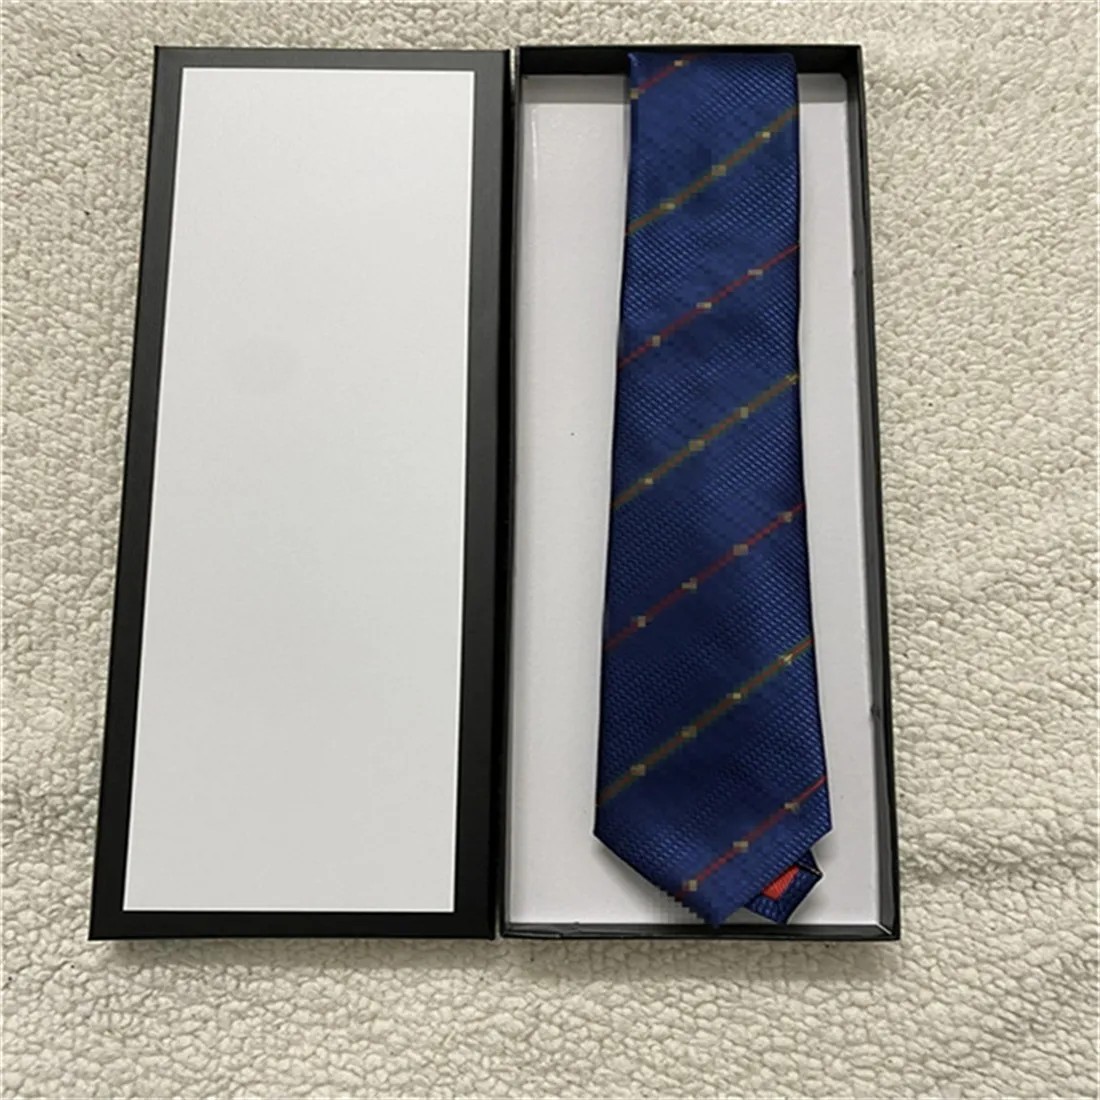 Lüks yeni tasarımcı erkekler mektubu% 100 kravat ipek kravat siyah mavi aldult jacquard parti düğün iş dokuma moda tasarımı hawaii boyun bağları kutu 1137 ile bağlar